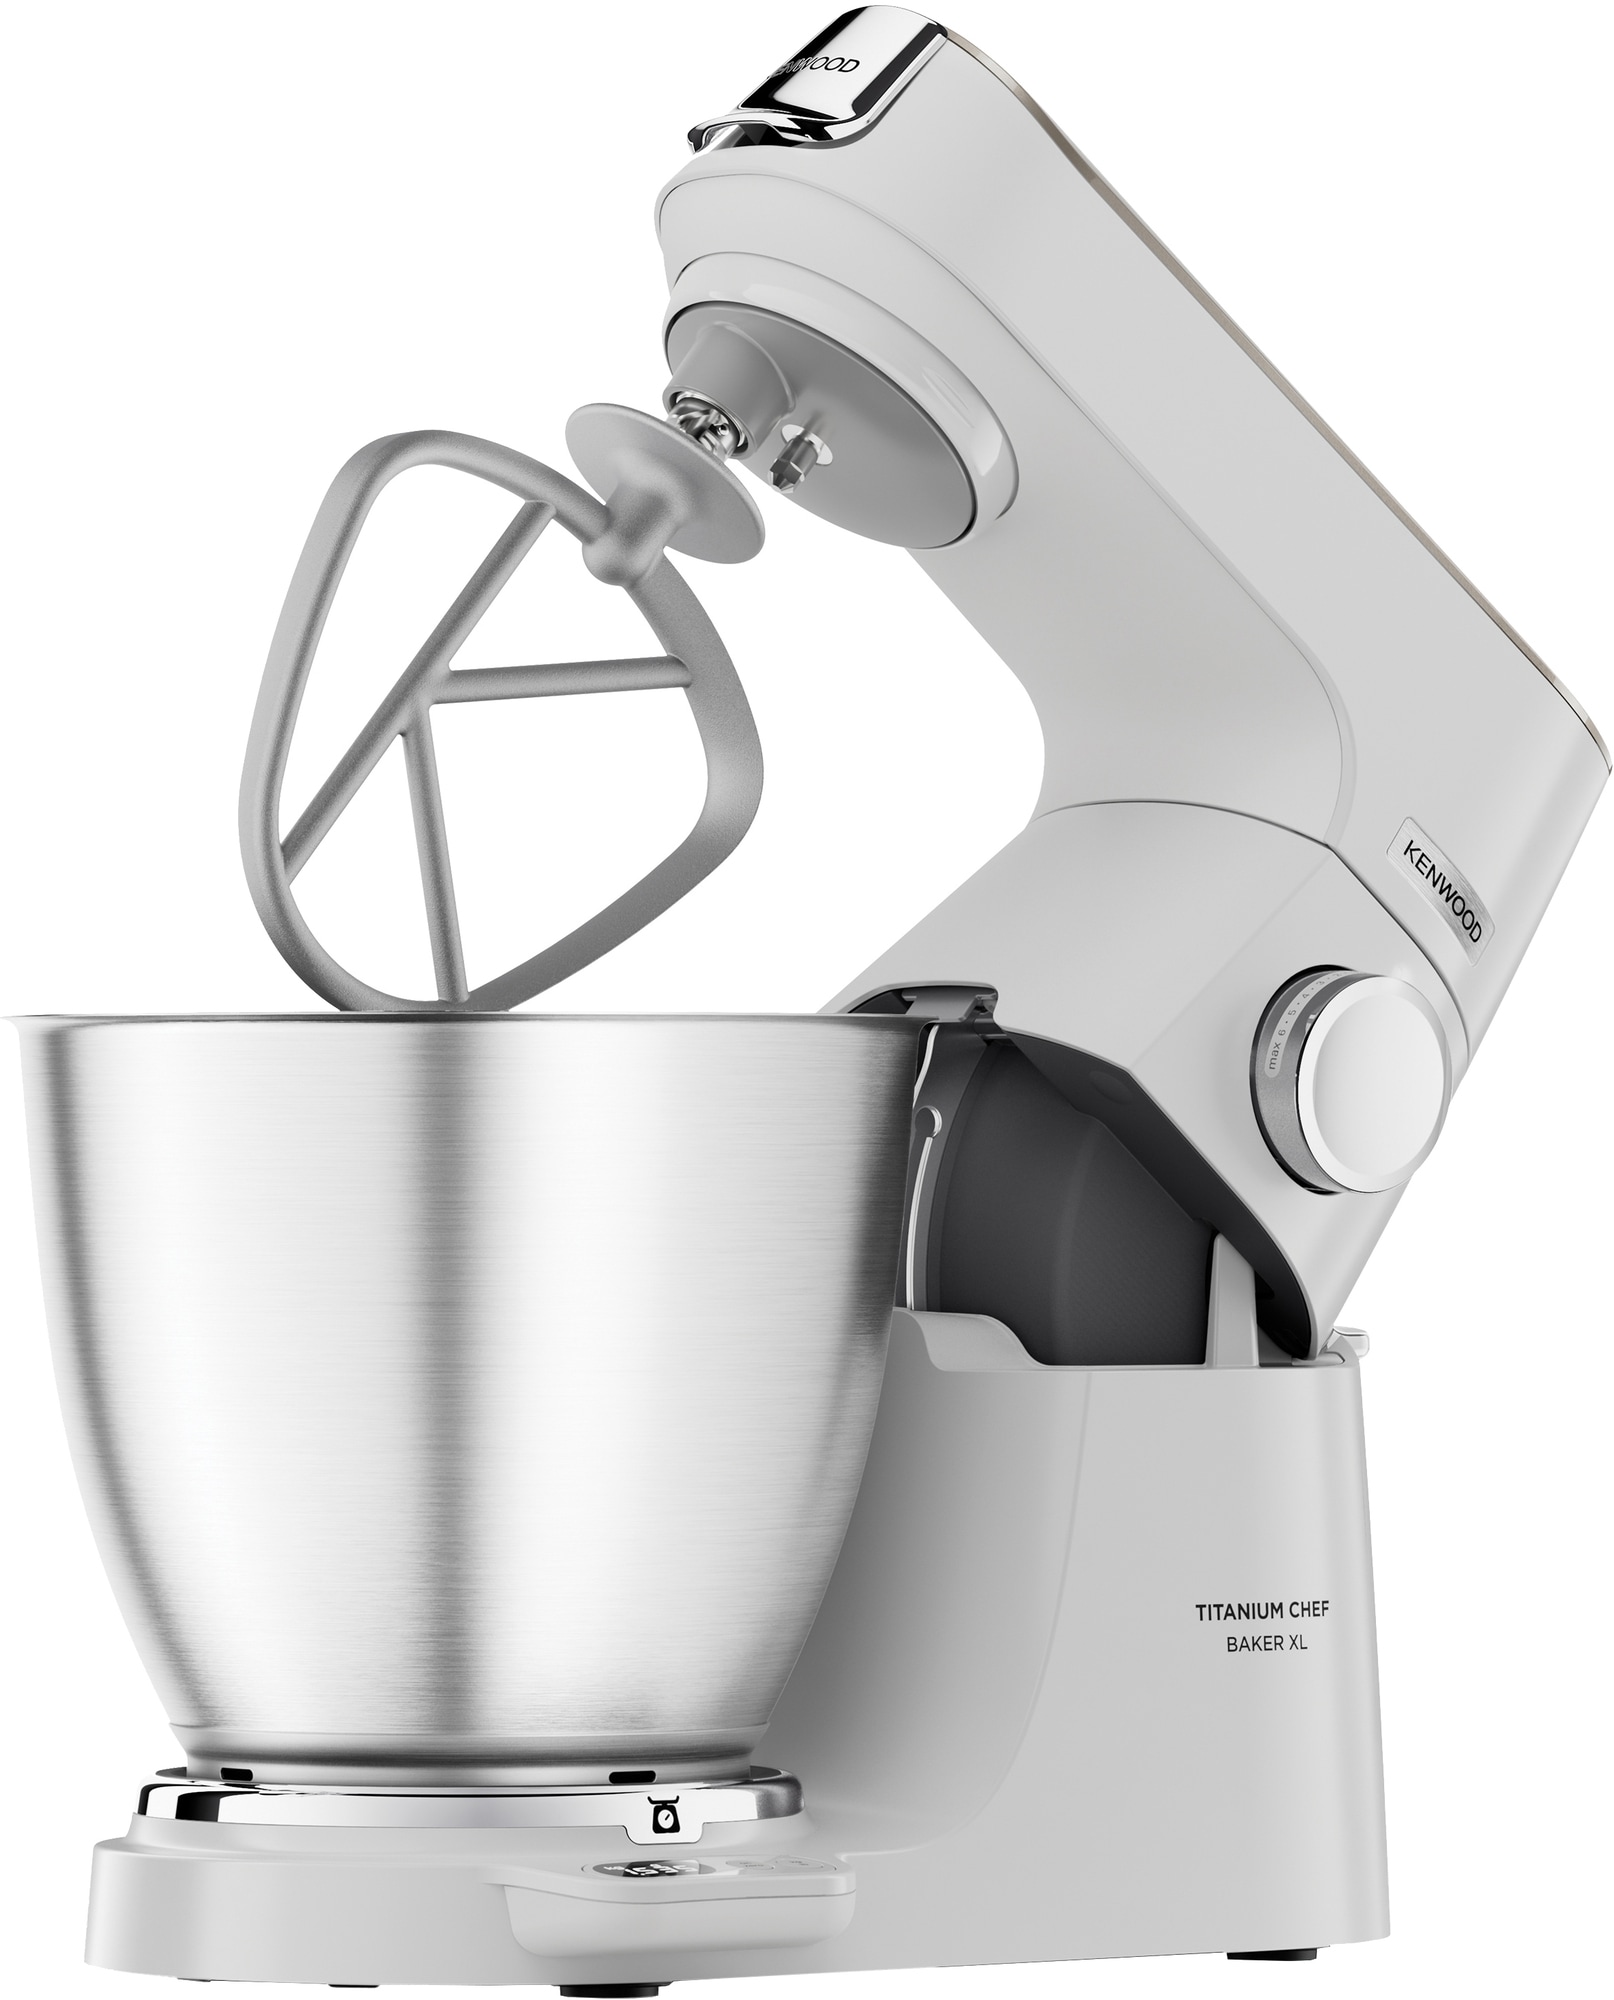 Kenwood Titanium Chef Baker XL køkkenmaskine KVL65001WH (hvid)